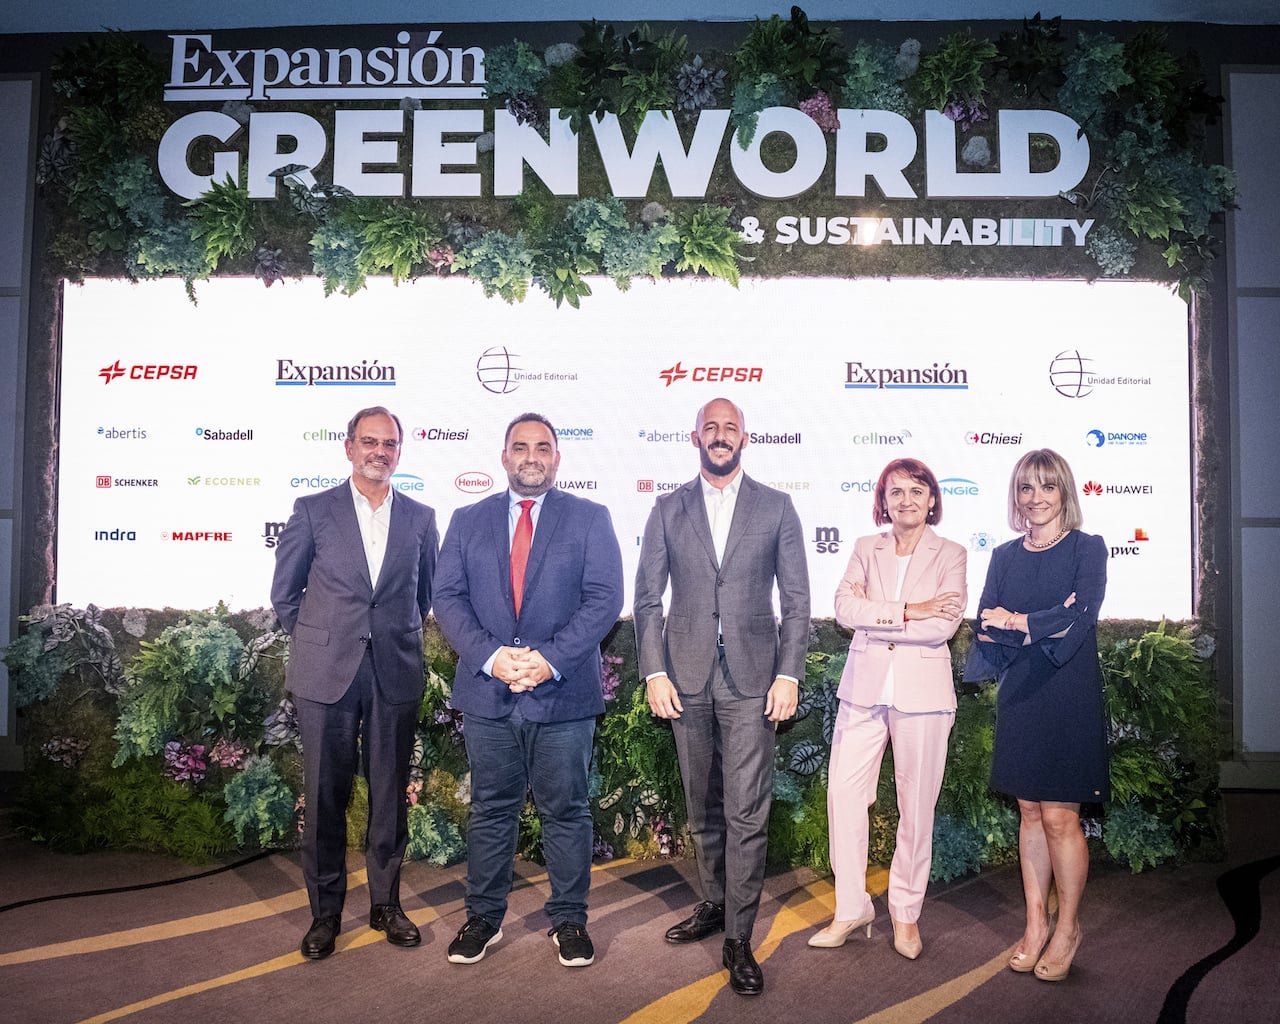 Green World Expansión, 27 y 28 de osctubre